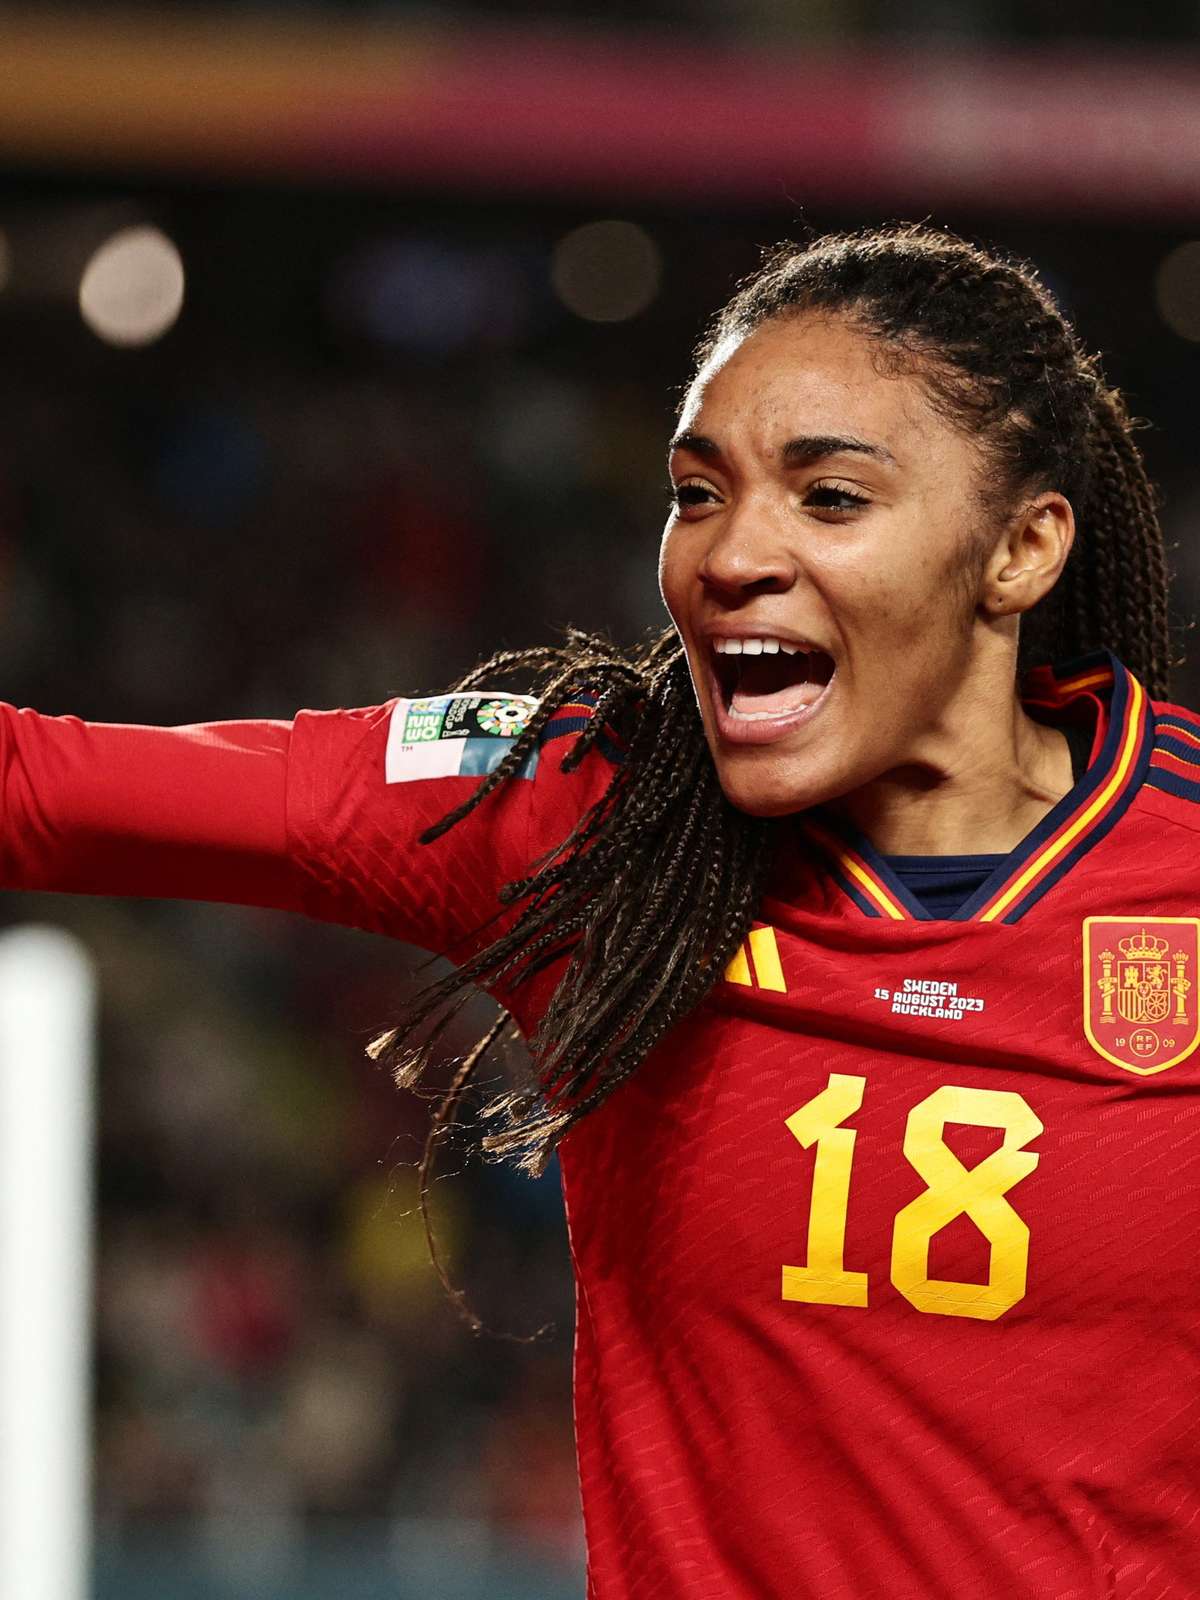 Copa feminina: Espanha vence a Inglaterra e é campeã do mundo - Placar - O  futebol sem barreiras para você